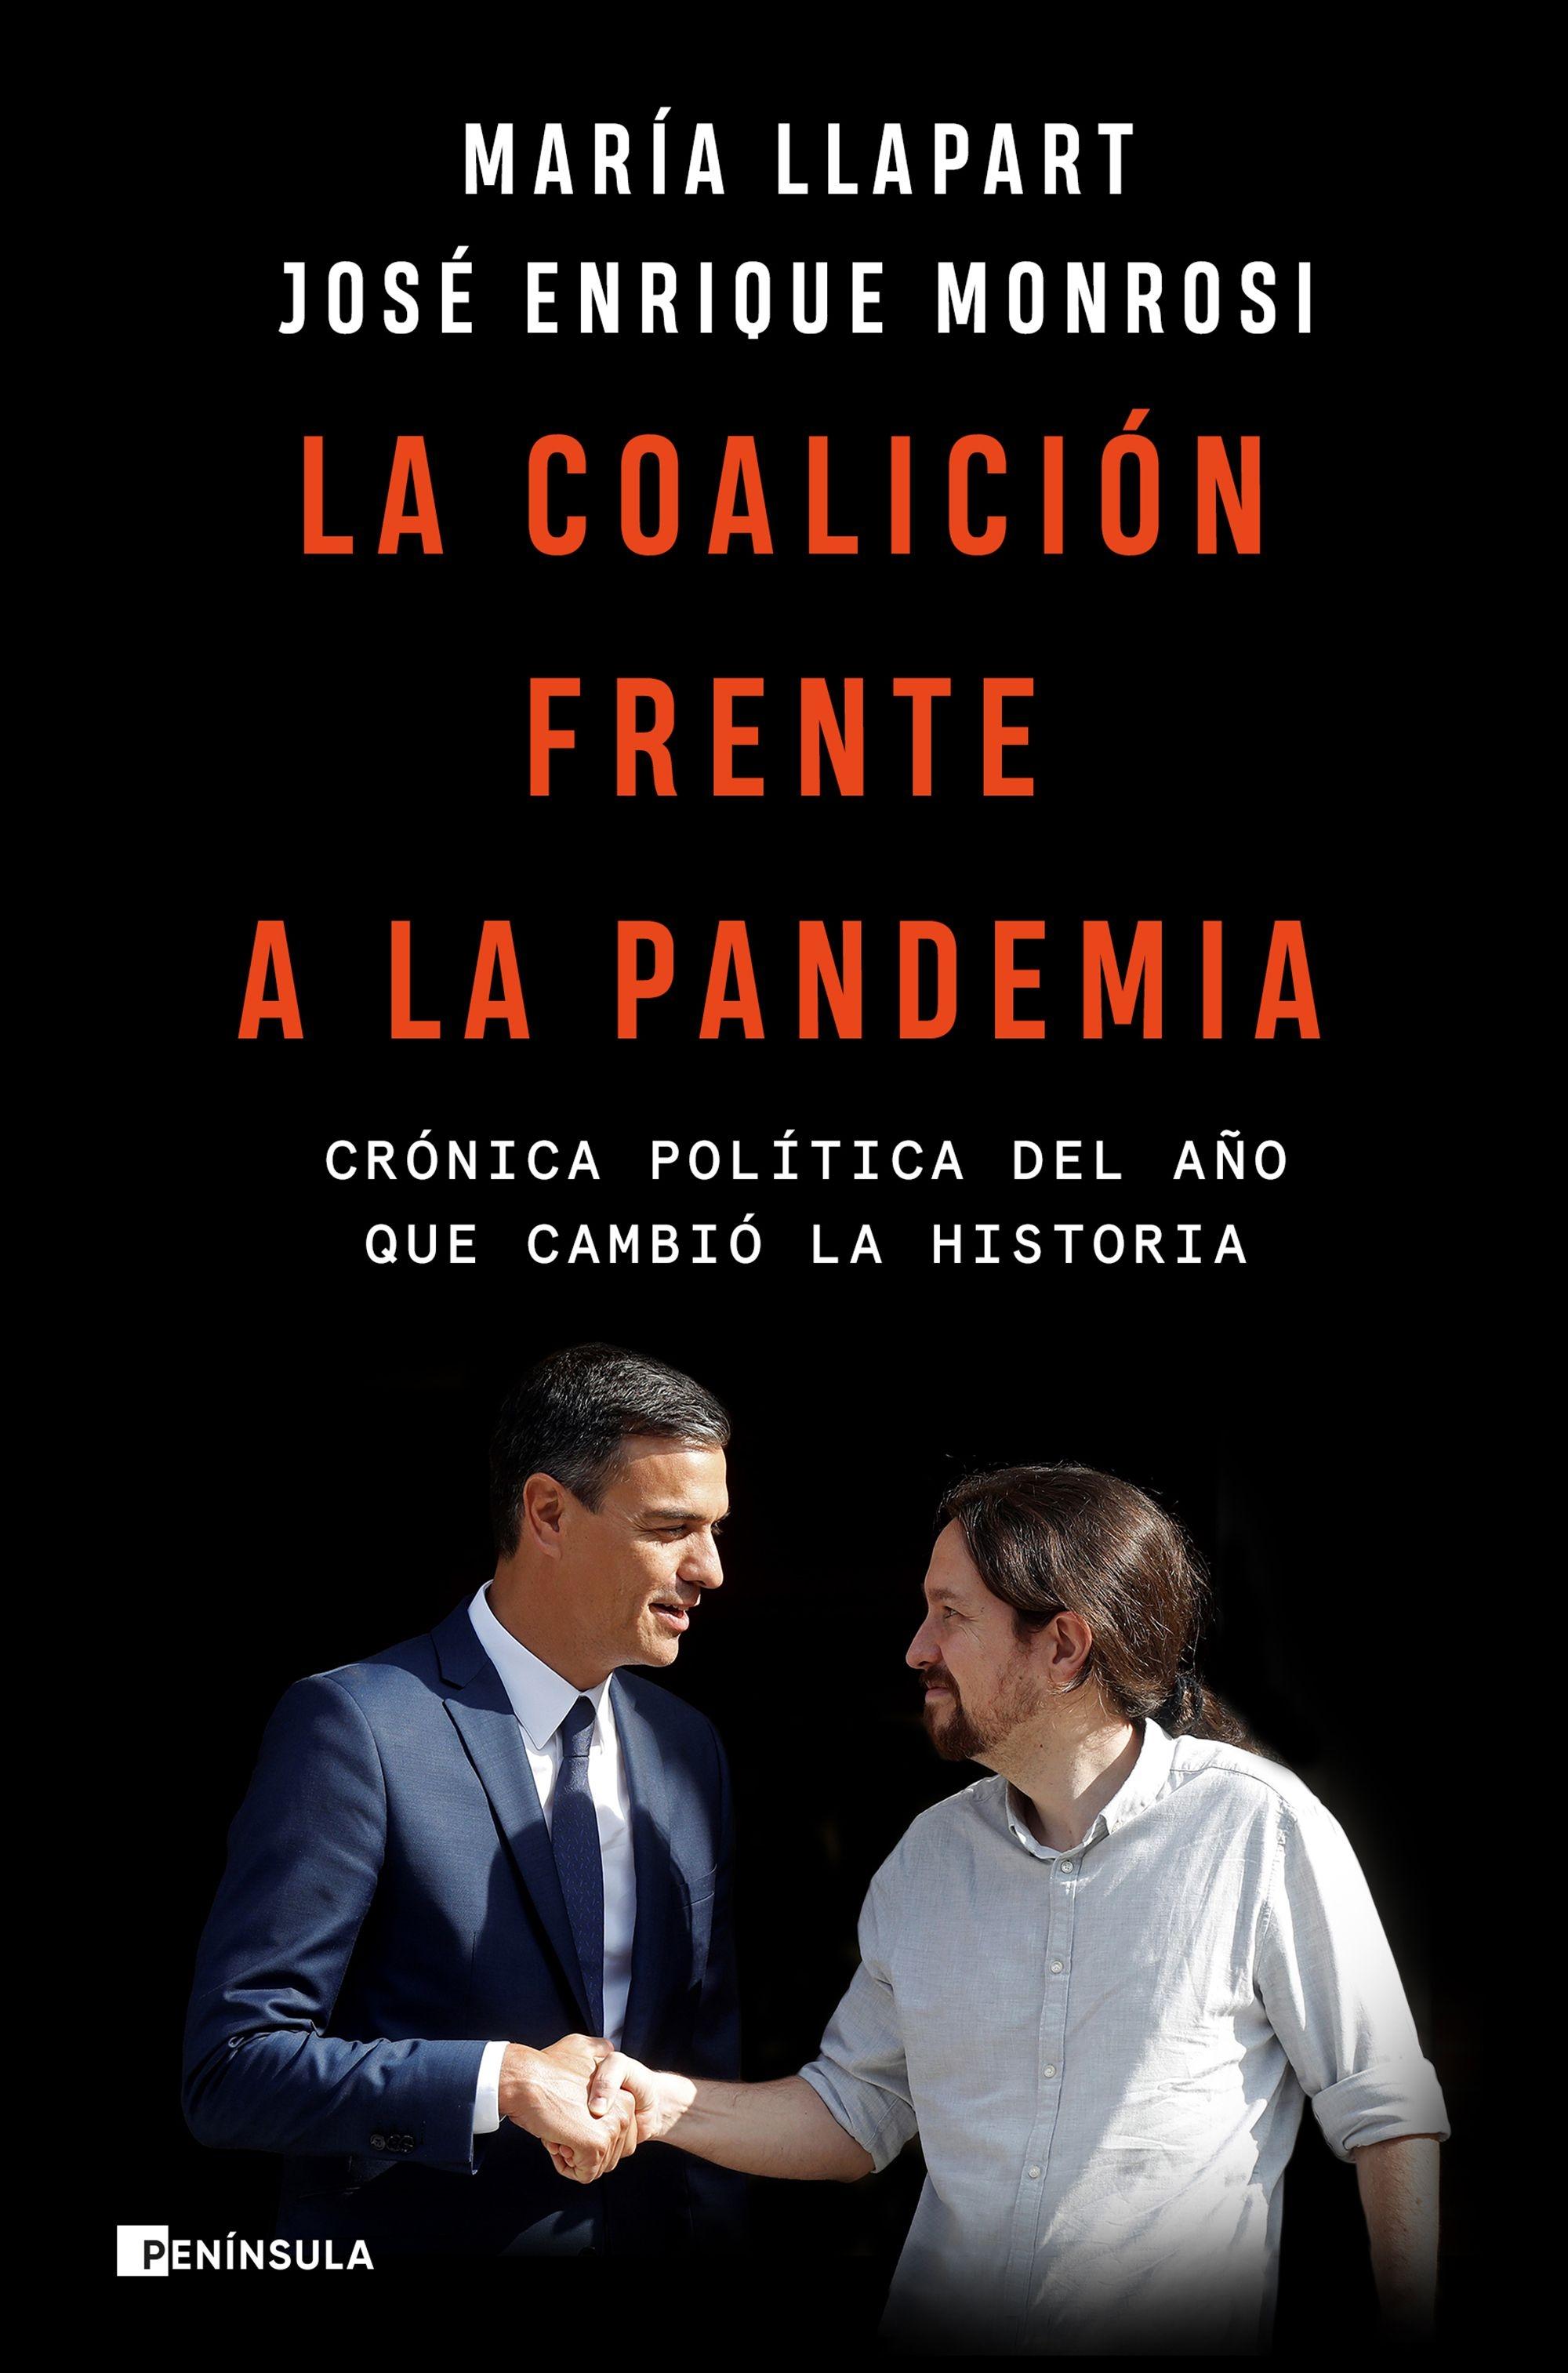 La coalición frente a la pandemia "Crónica política del año que cambió la historia". 